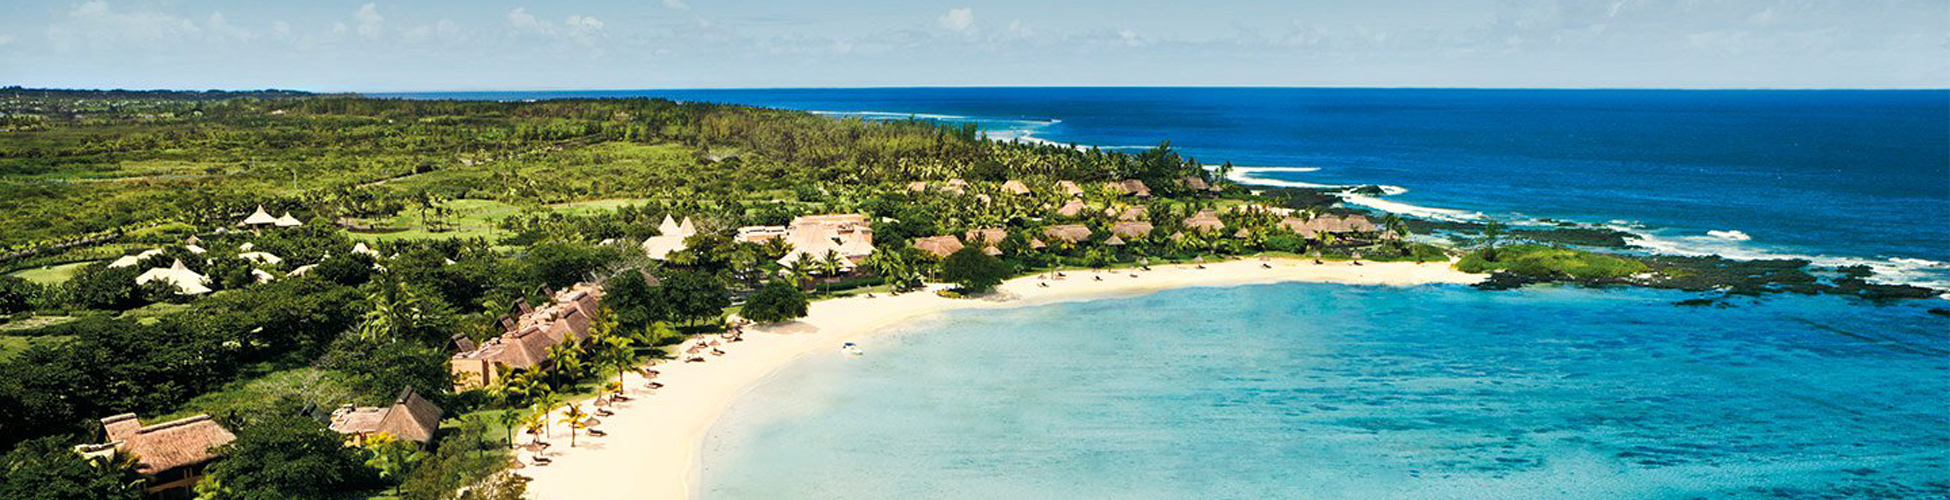 shanti-maurice-resort-mauritius